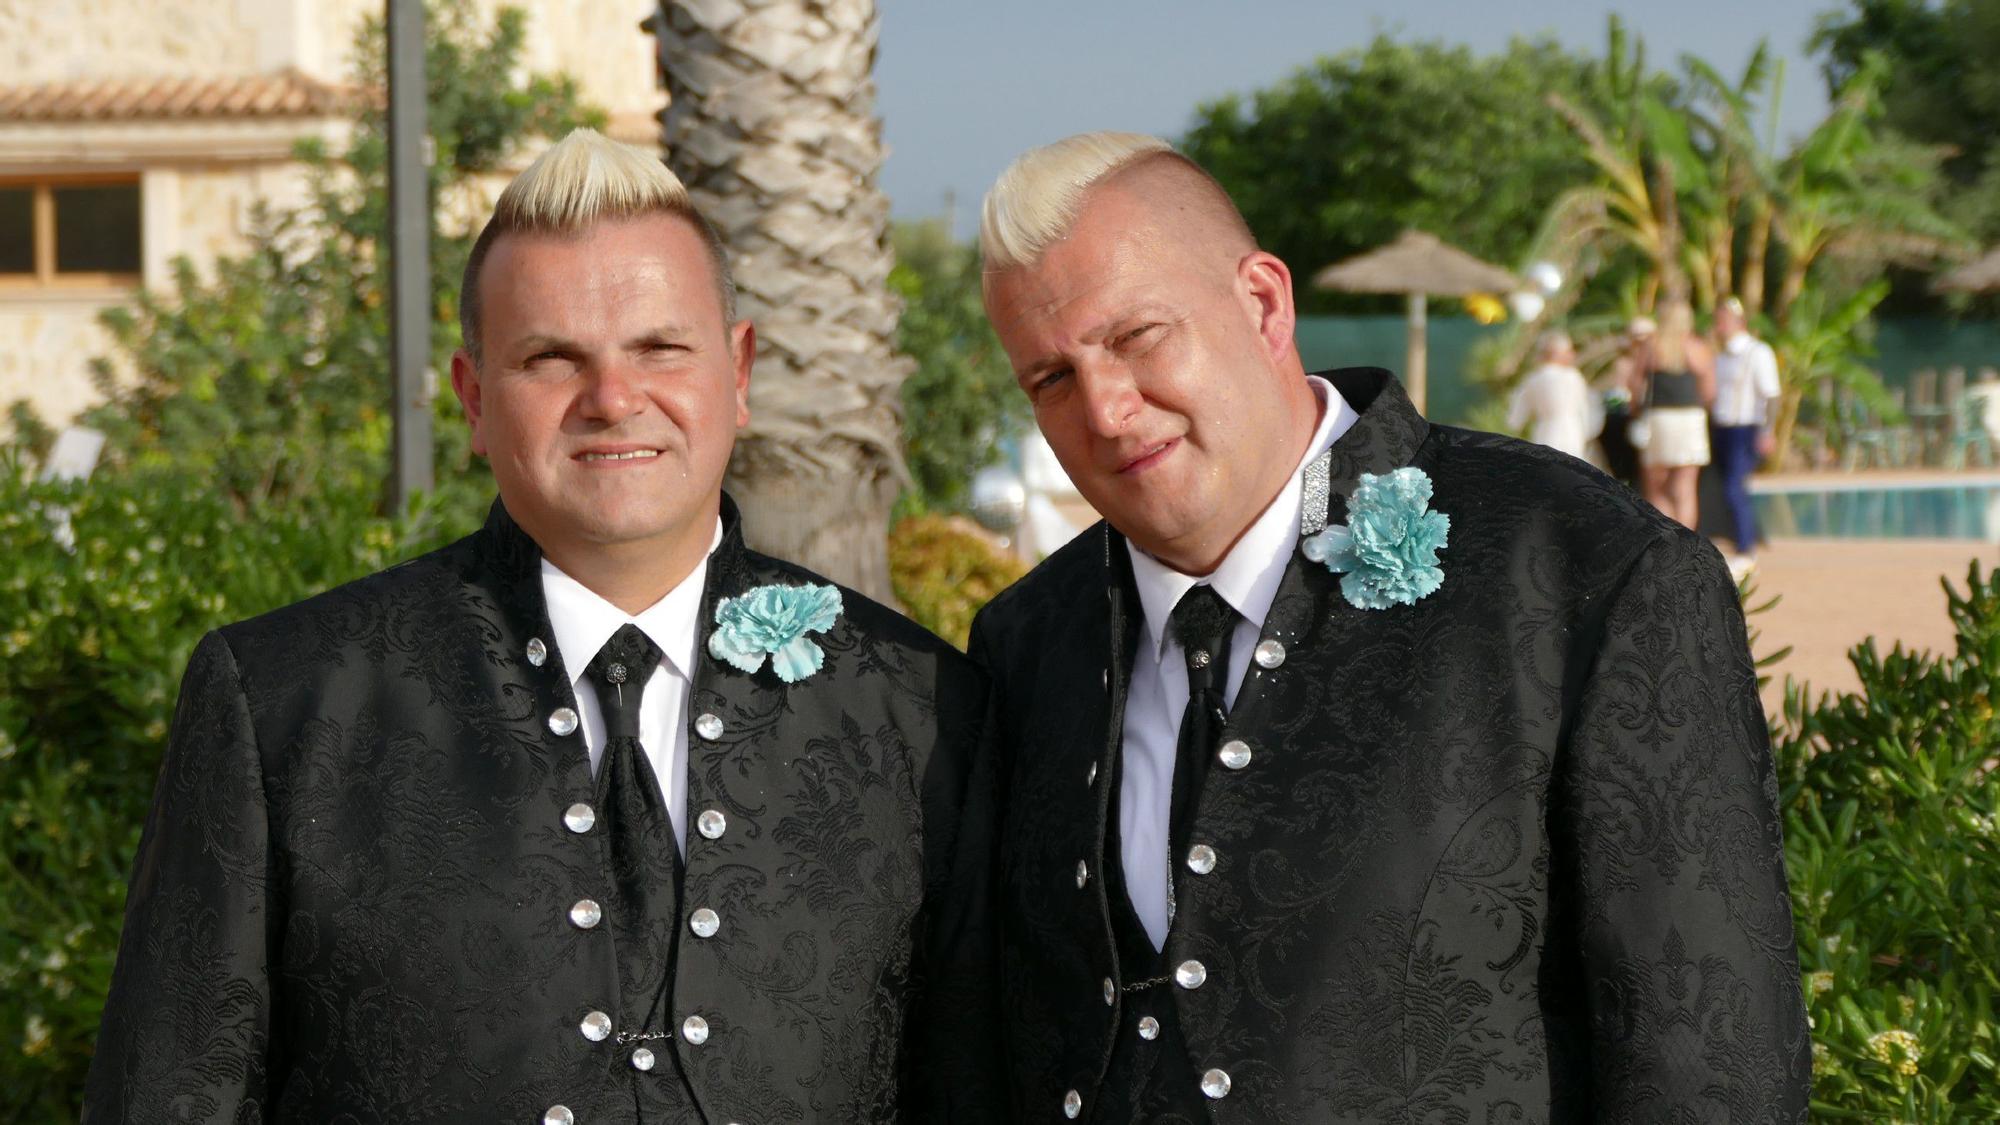 Patrick Zahn und Nils Heidenreich an ihrem Hochzeitstag